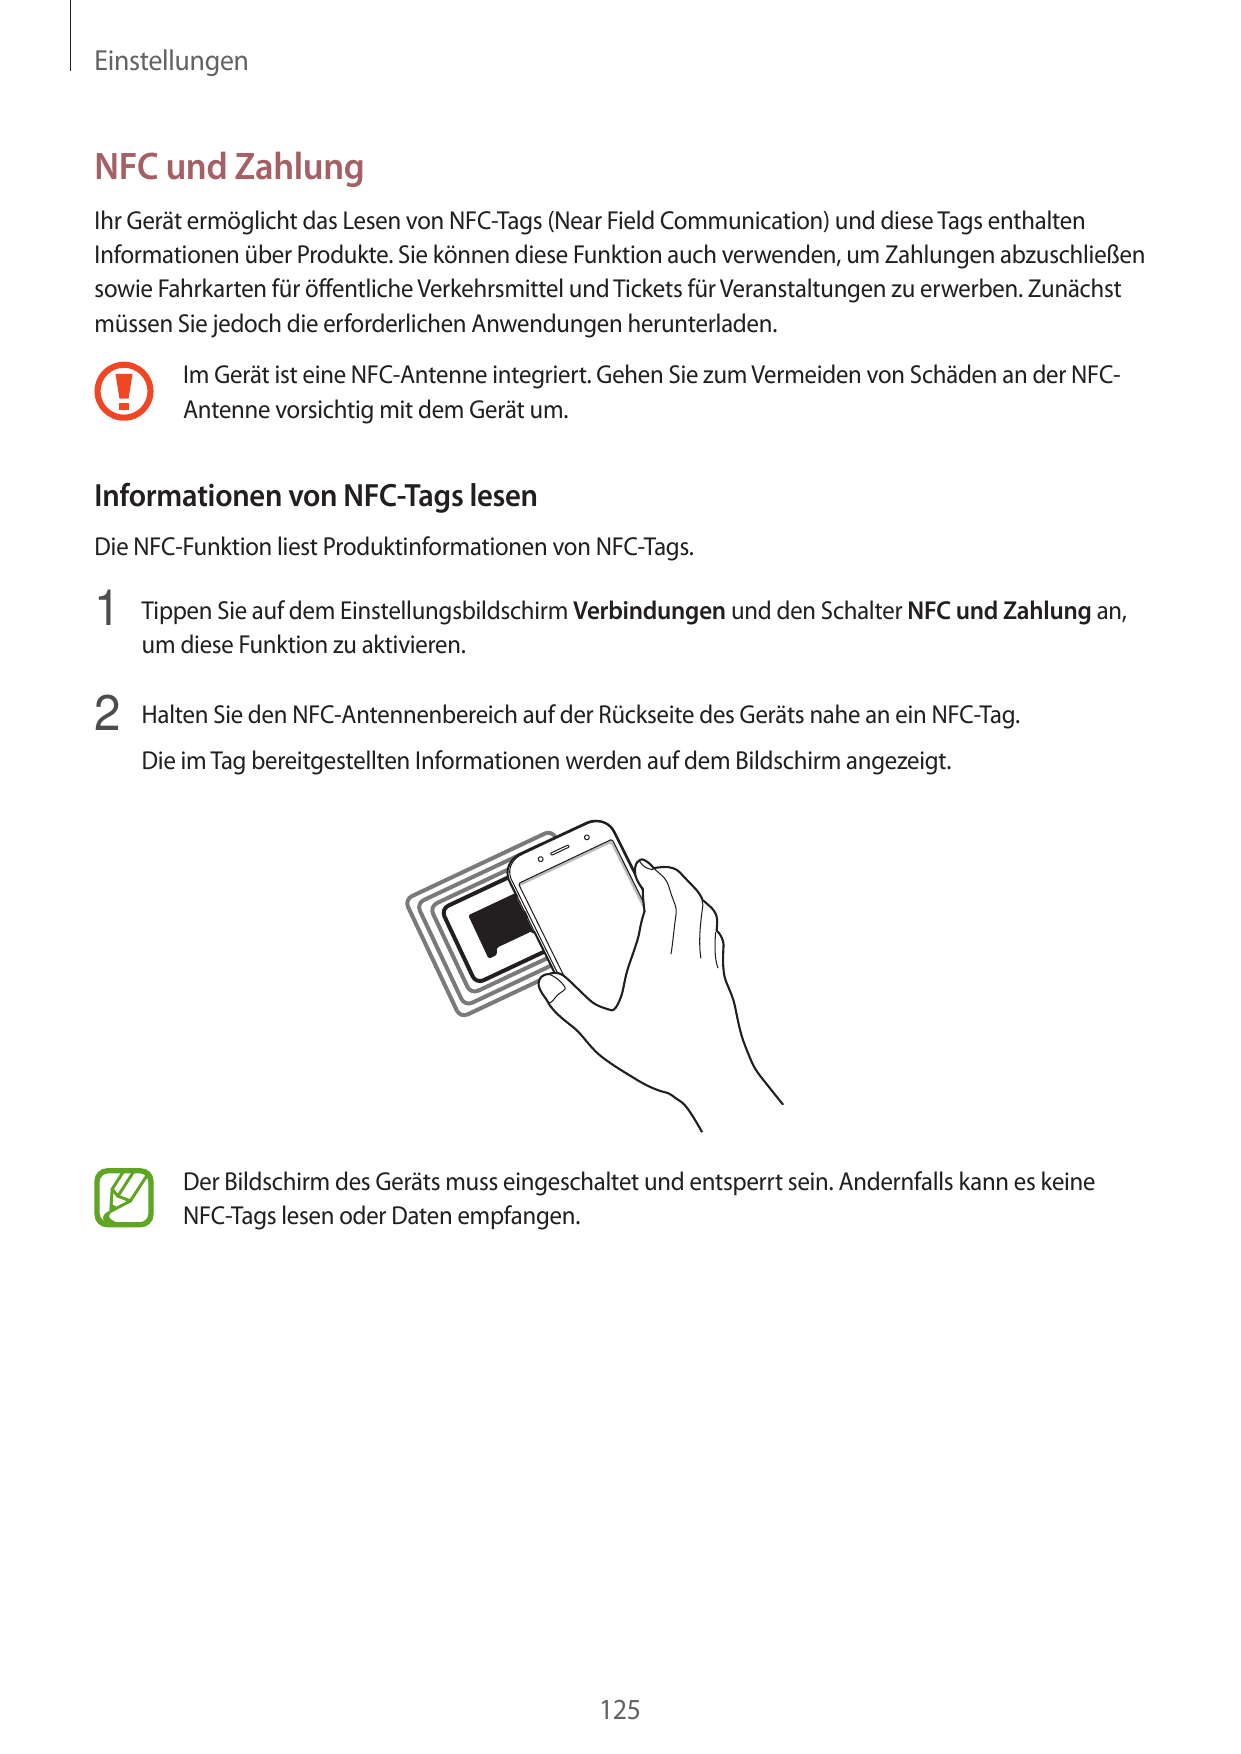 EinstellungenNFC und ZahlungIhr Gerät ermöglicht das Lesen von NFC-Tags (Near Field Communication) und diese Tags enthaltenInfor